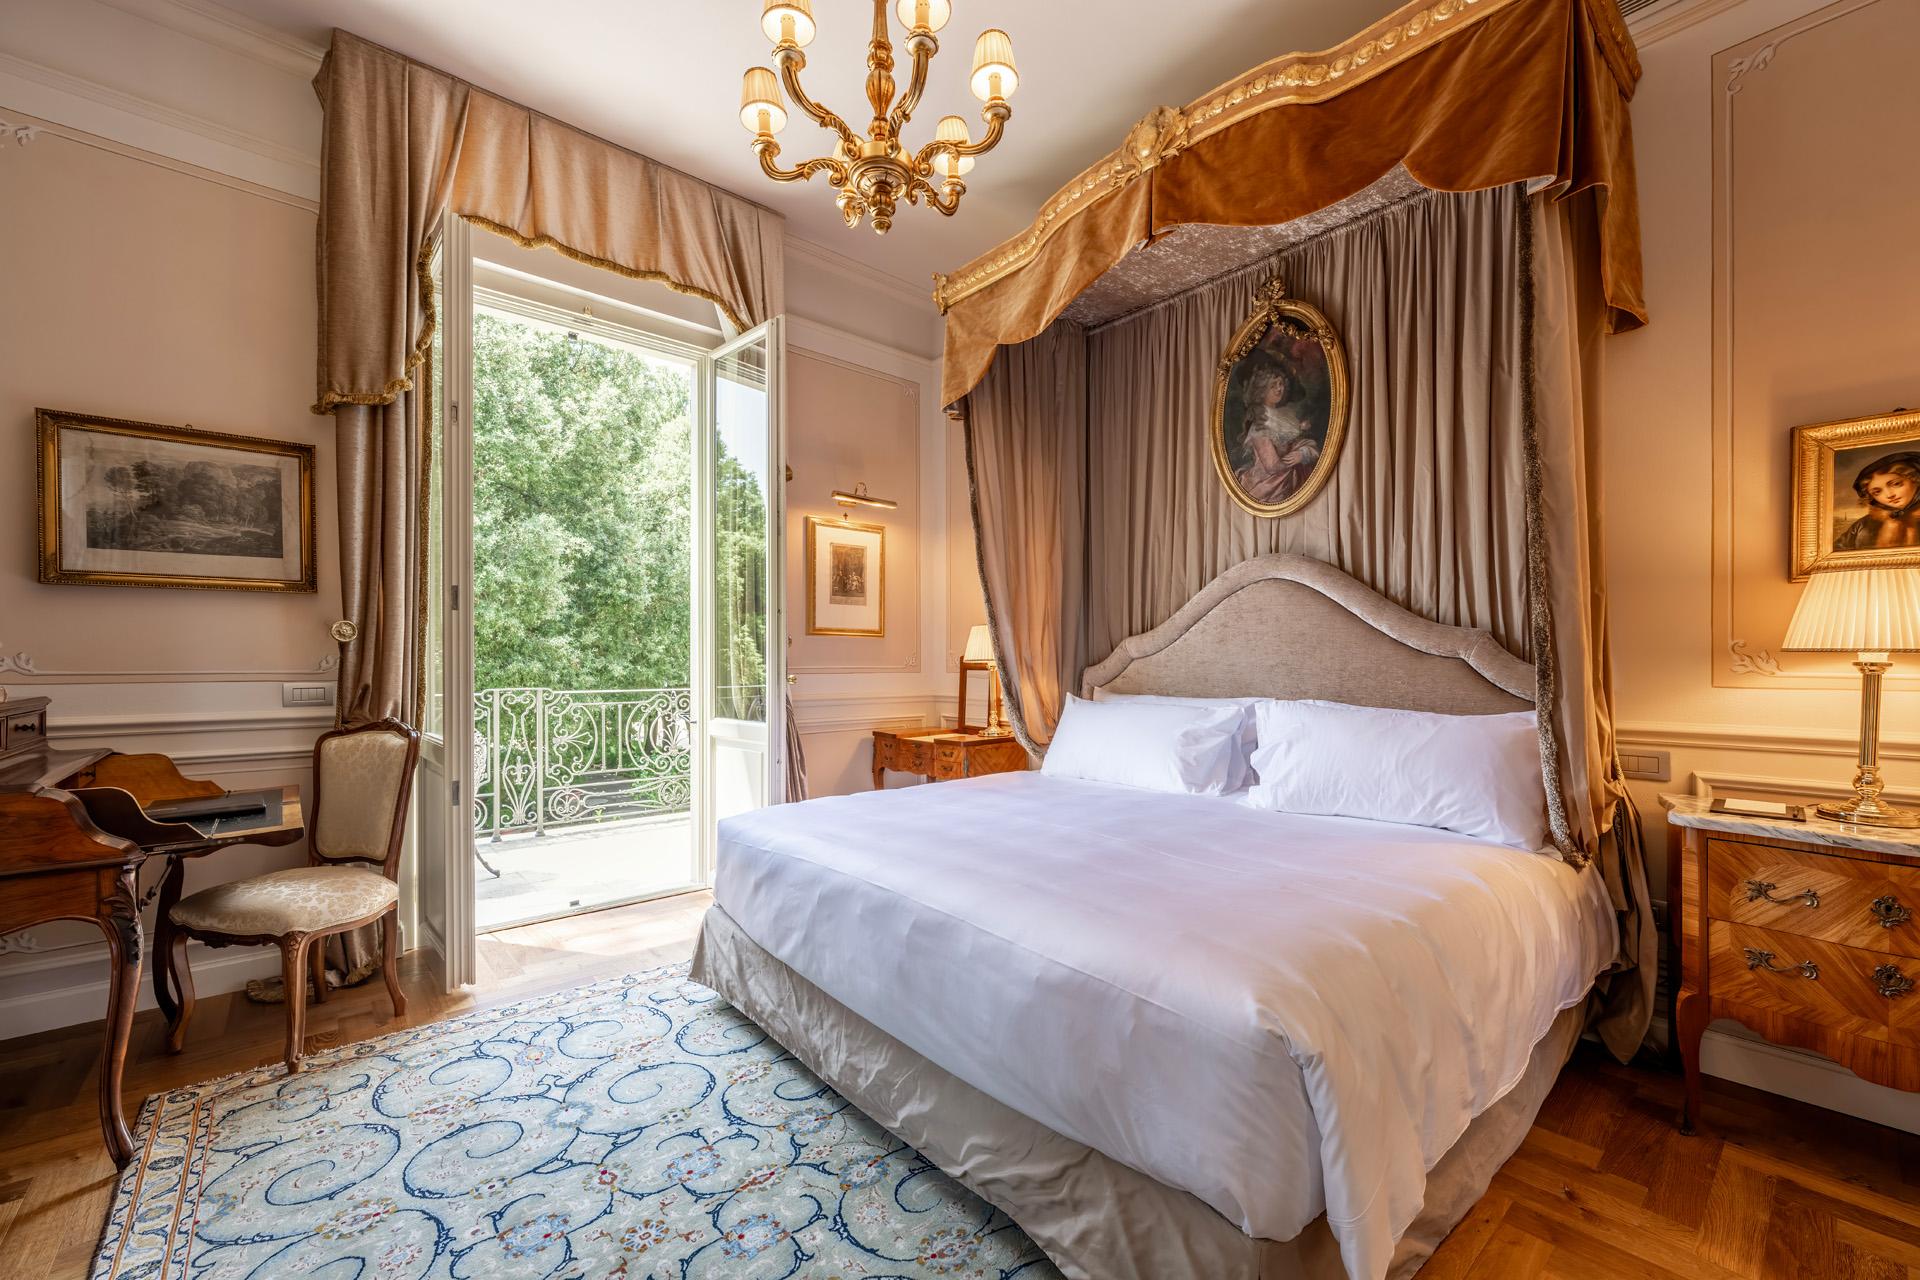 Louise Colet Suite | Luxury suite on the shore of Trasimeno Lake, Umbria| Villa Valentini Bonaparte